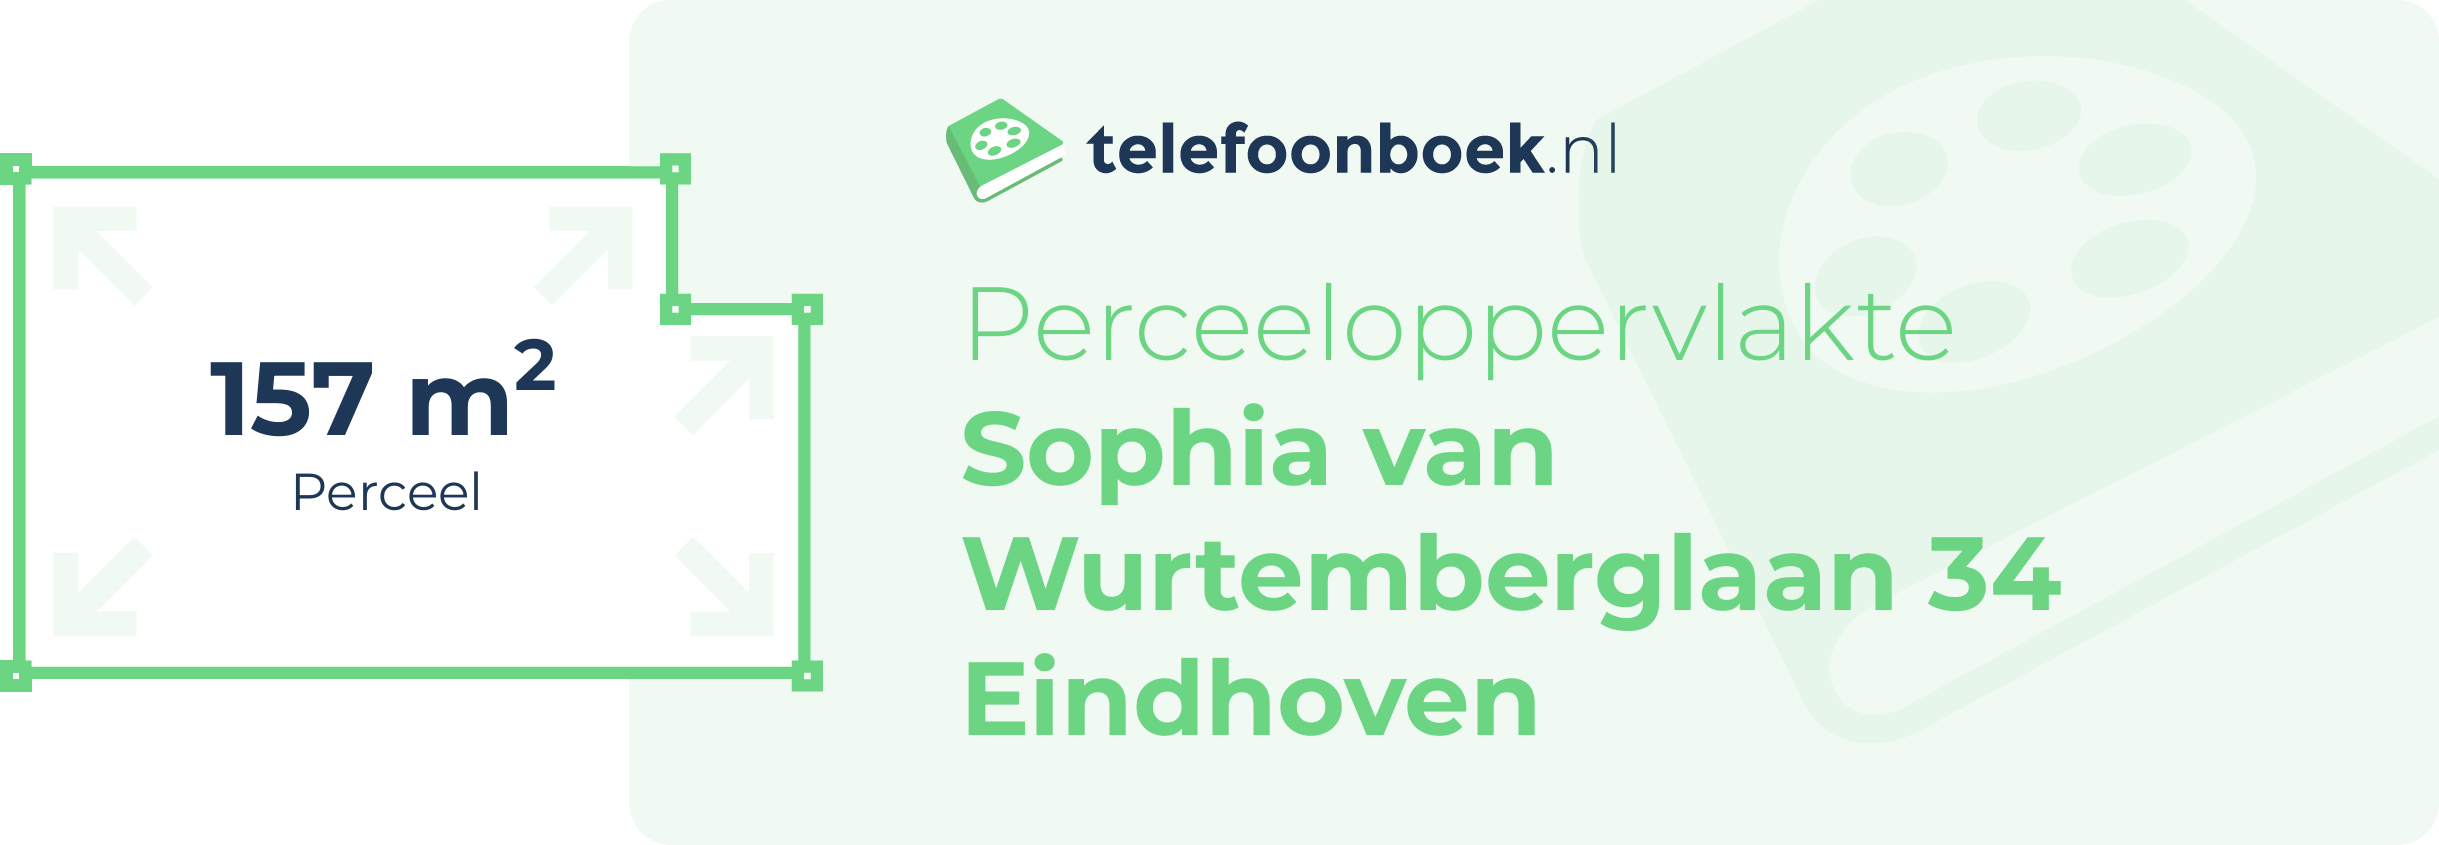 Perceeloppervlakte Sophia Van Wurtemberglaan 34 Eindhoven